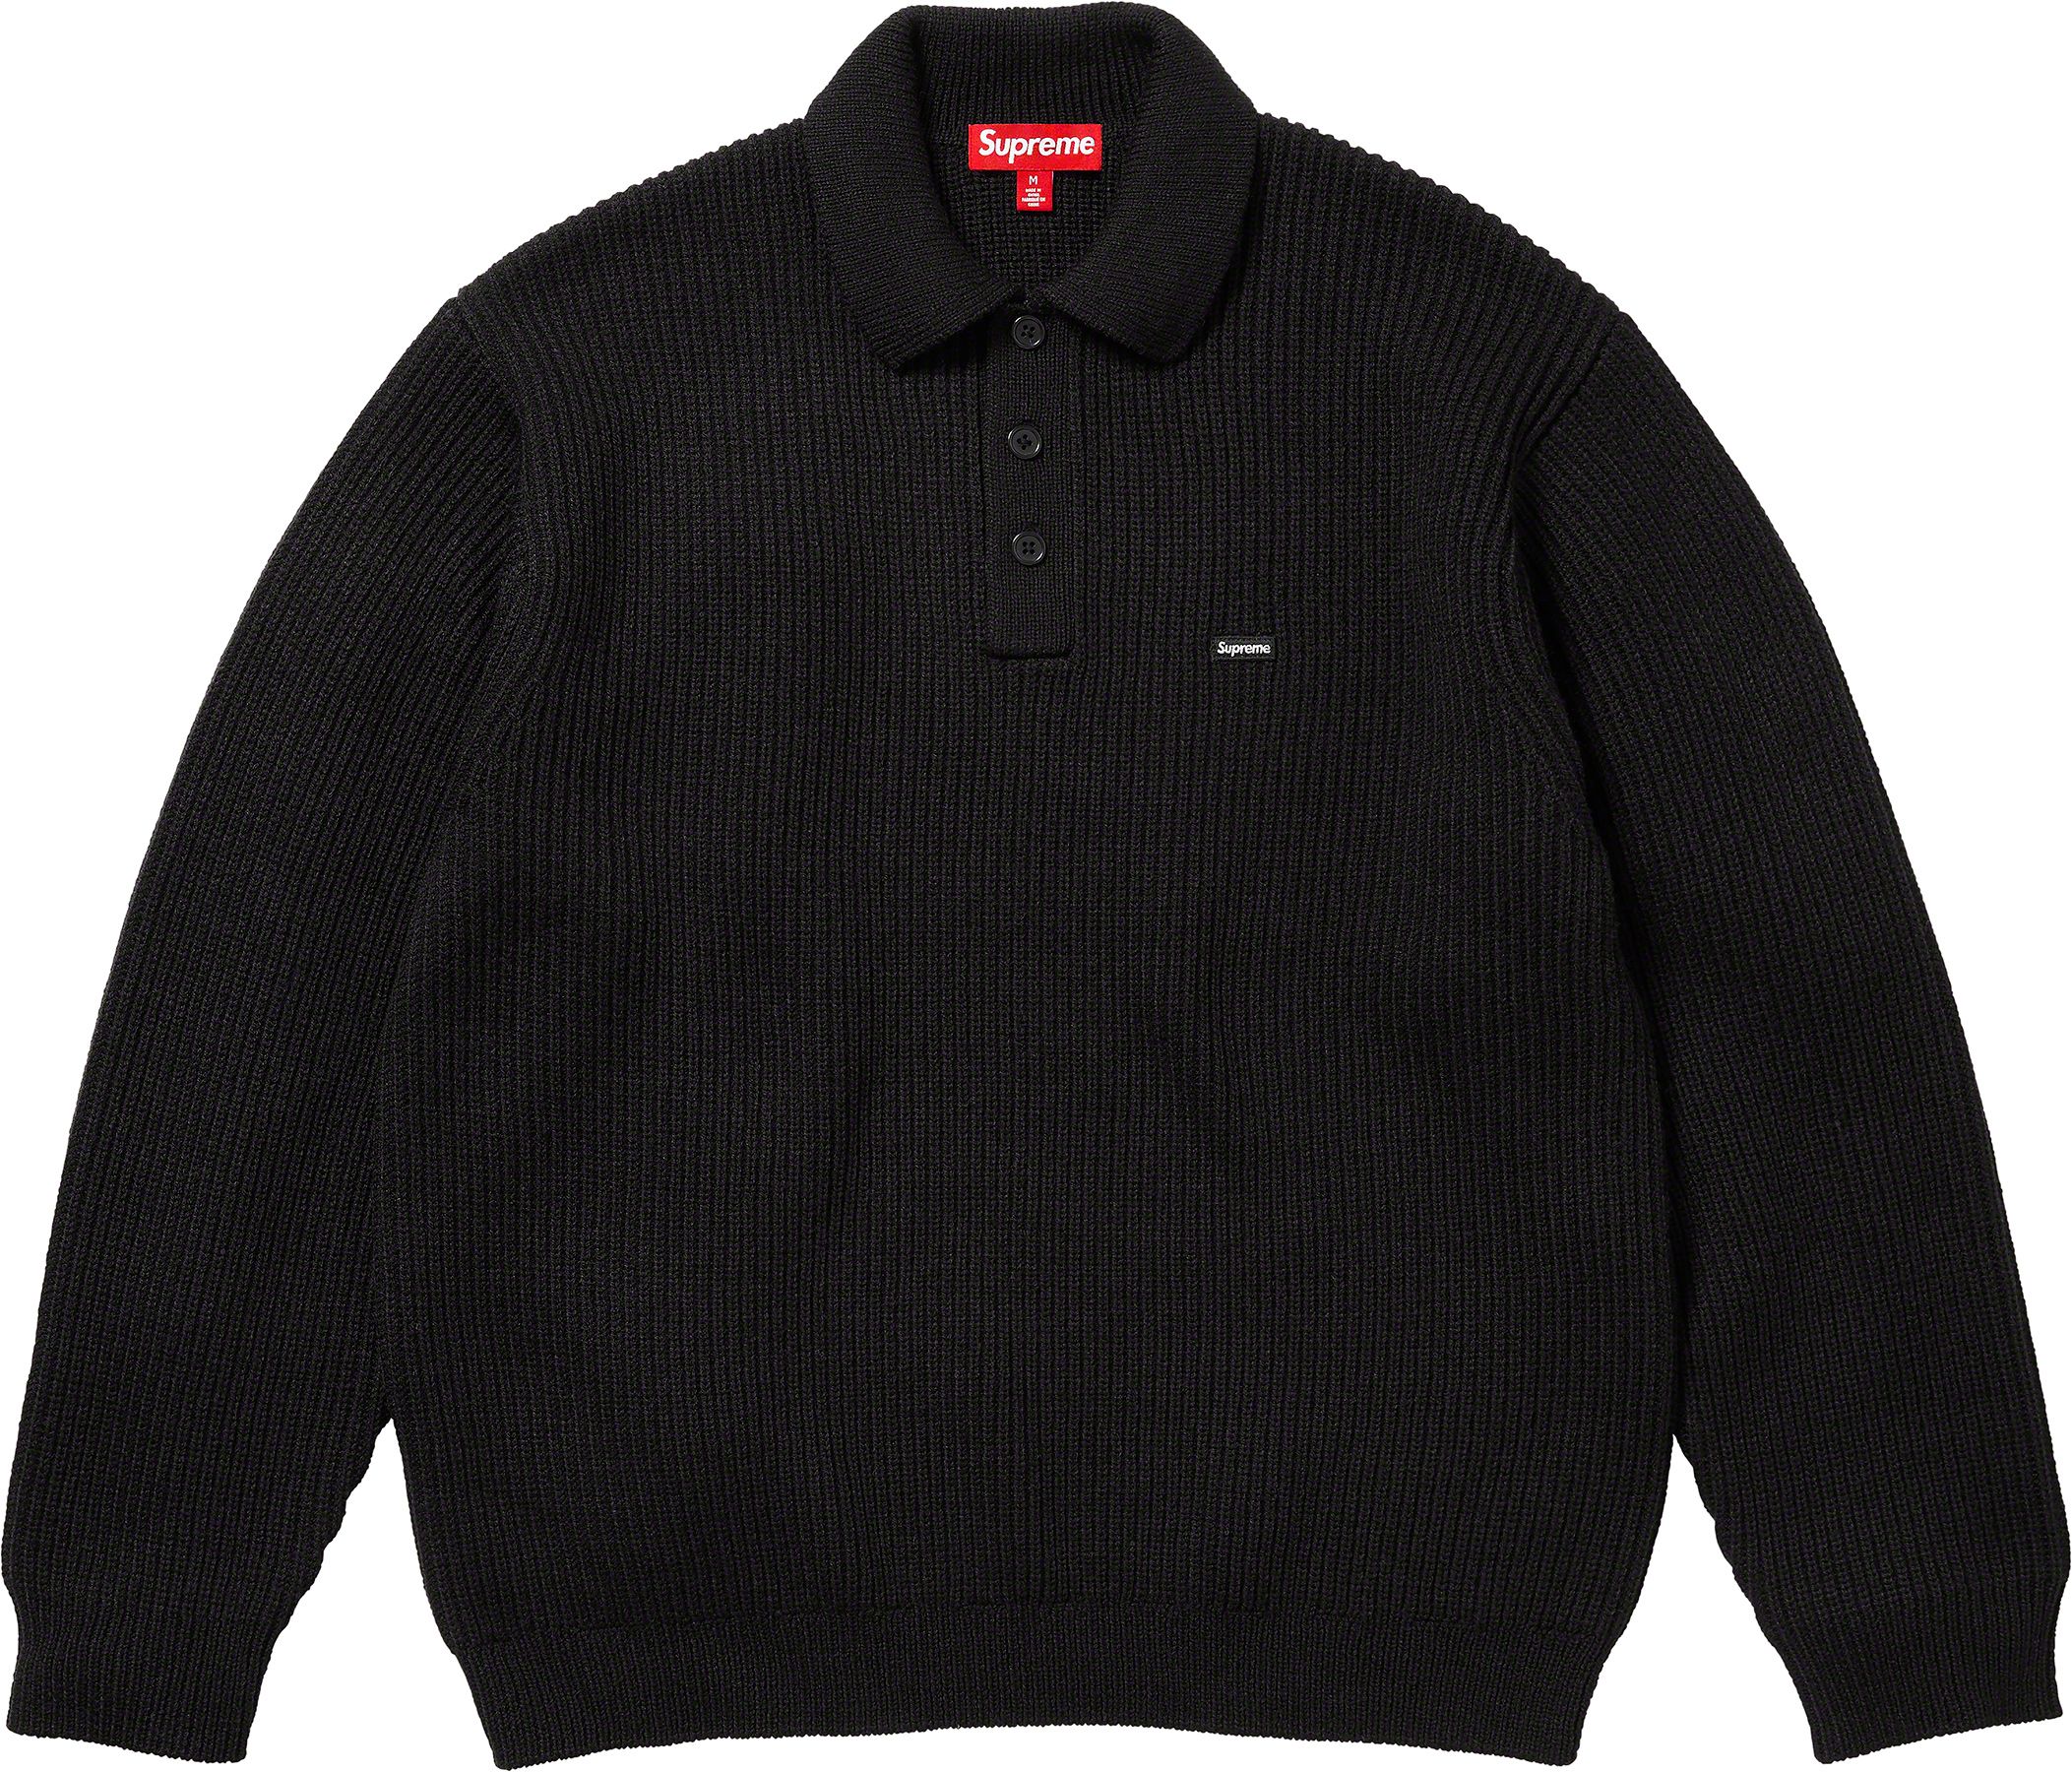 返品保証有 【生産数極少】Supreme Blurred Logo Sweater - トップス